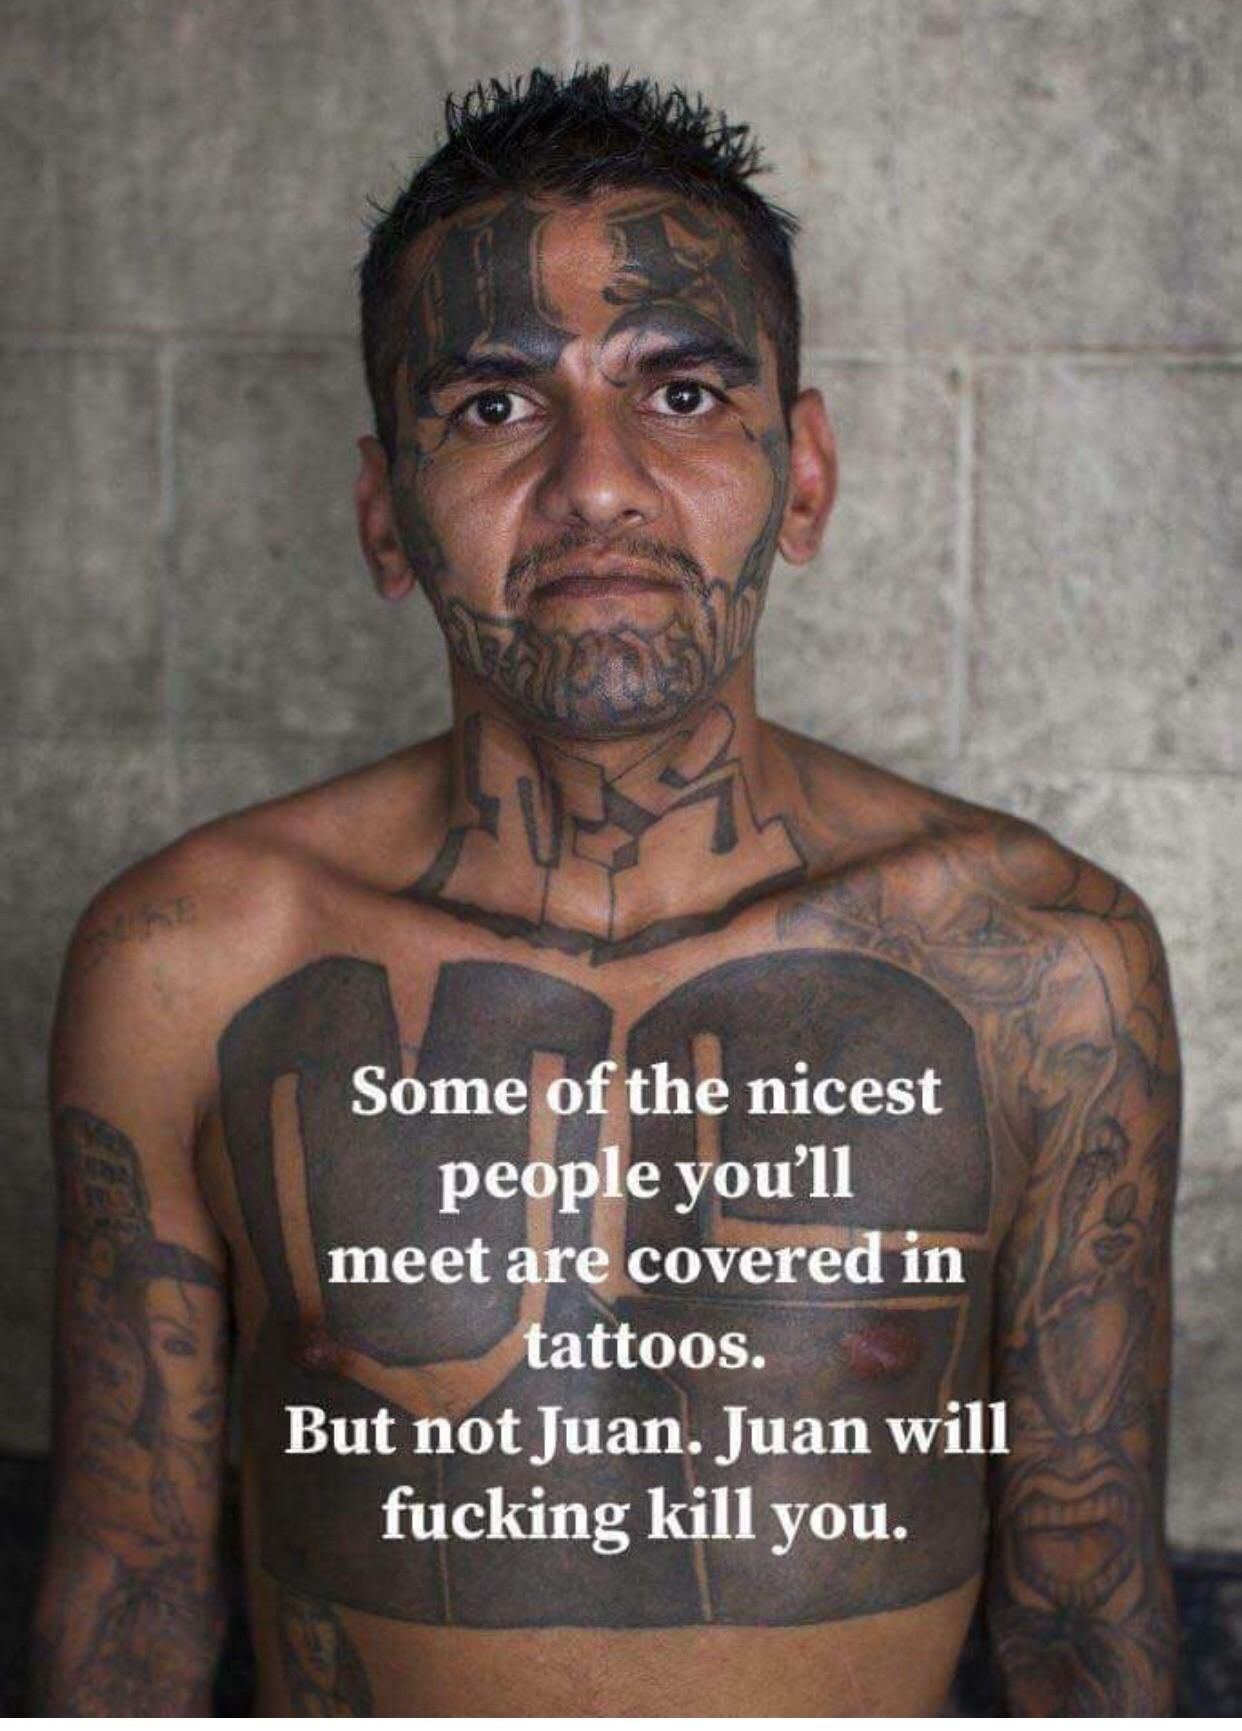 Not Juan though.